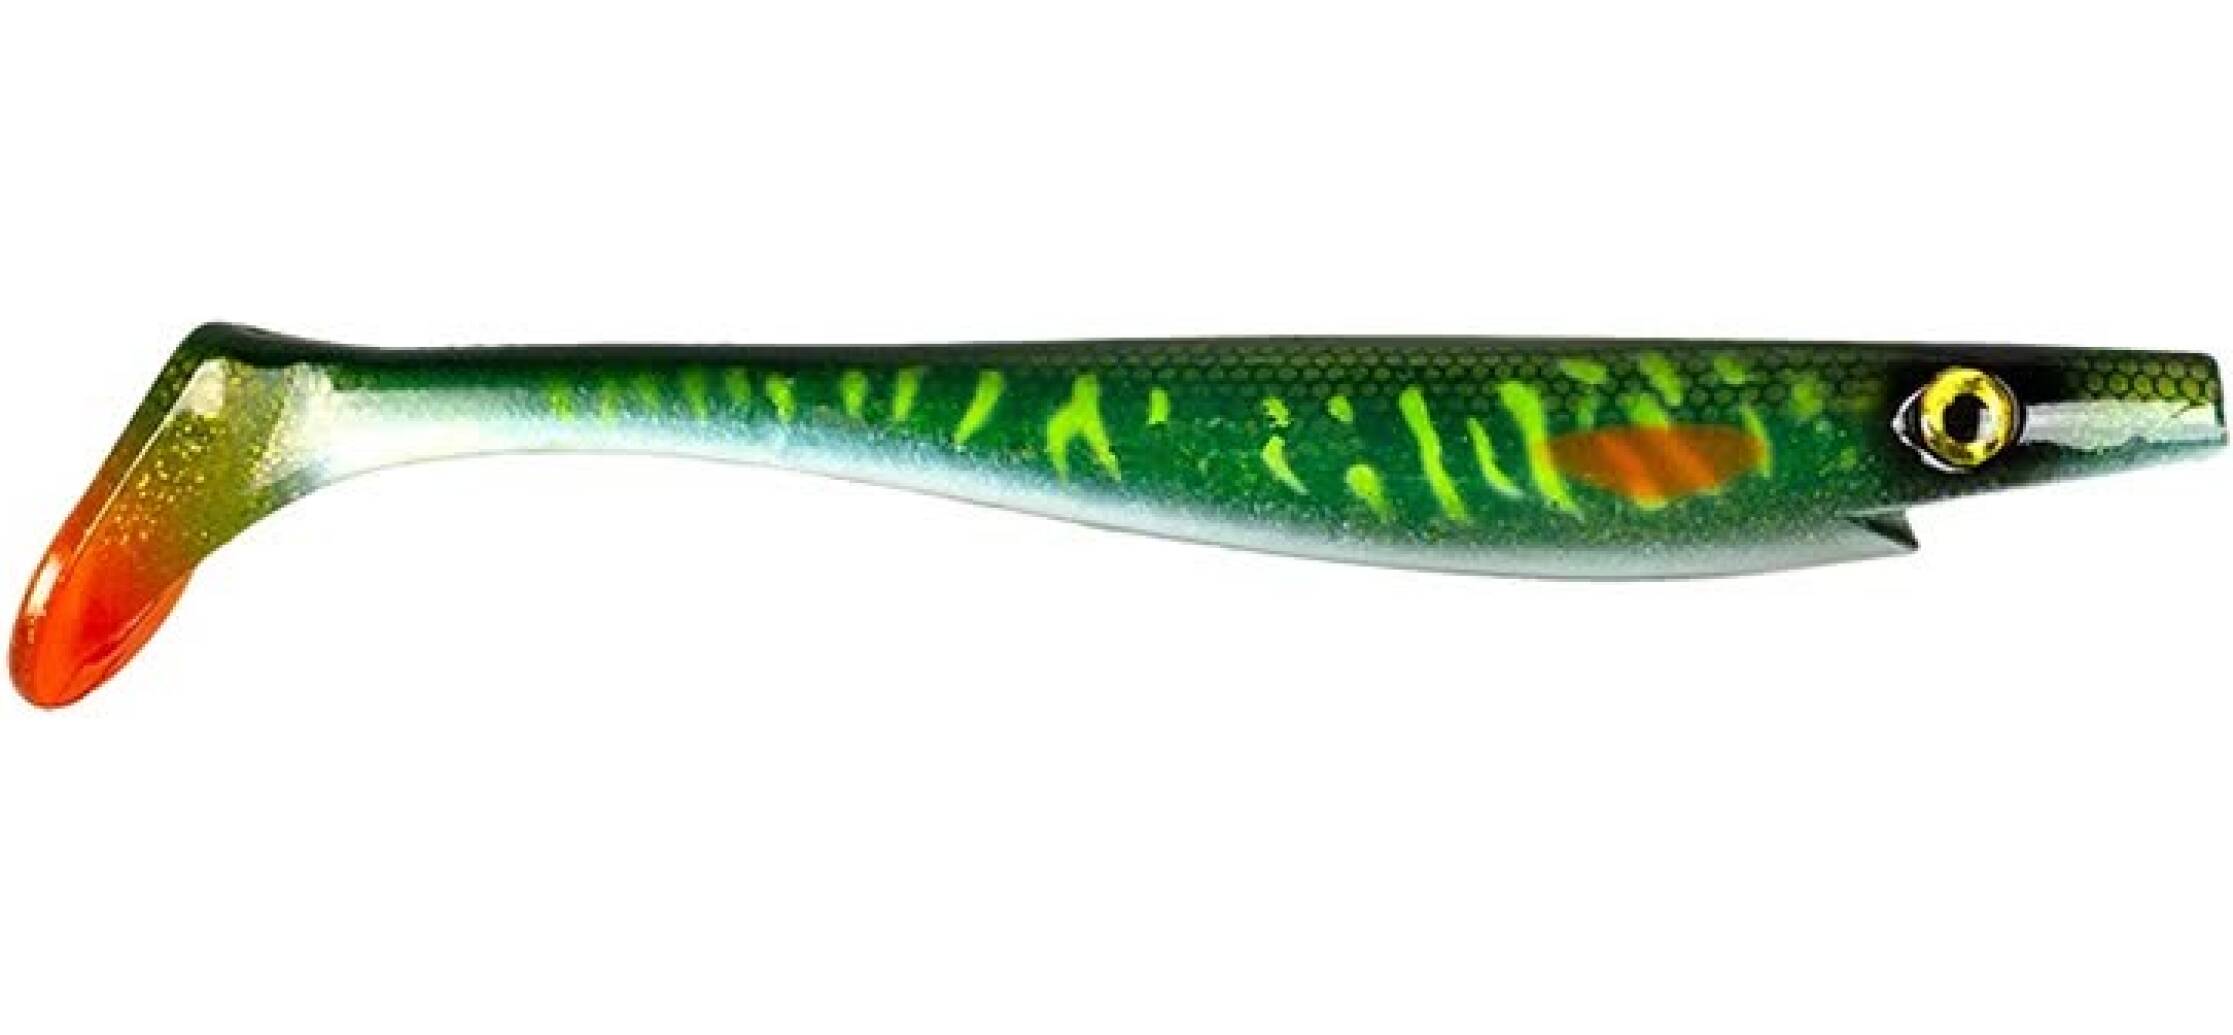 Giant Pig Tail, 40cm, 130g - Green Motoroil Pike UV